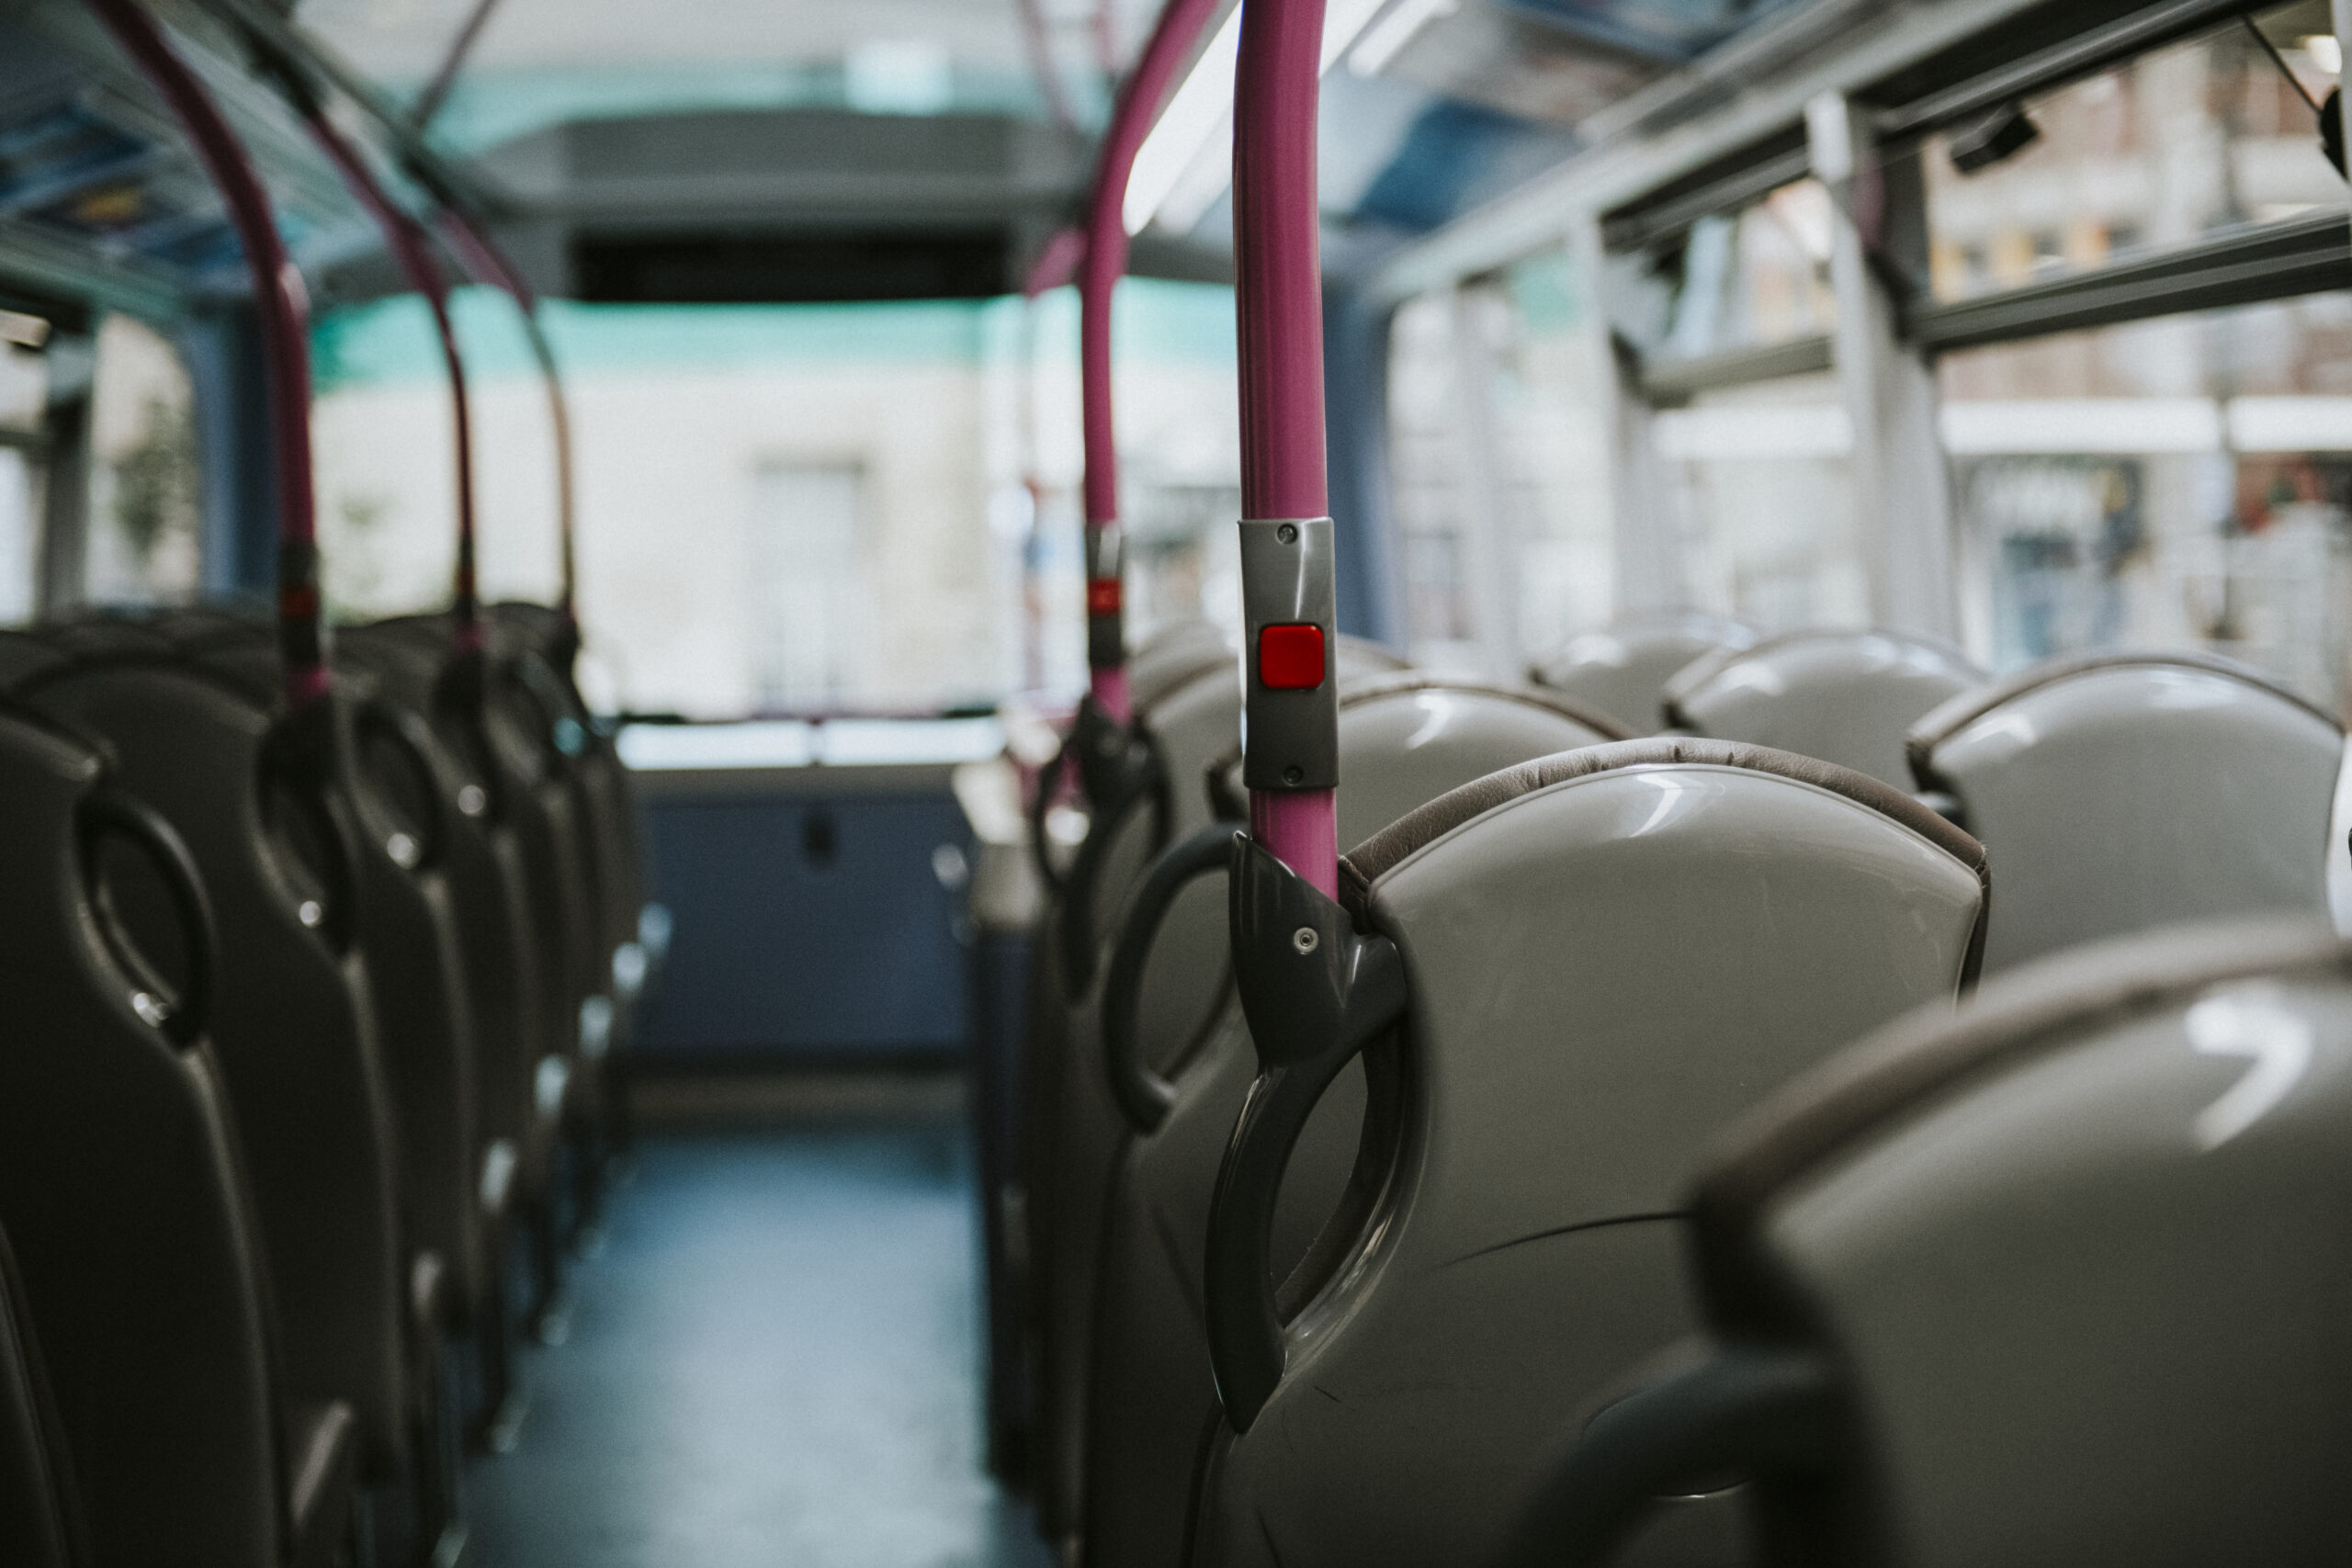 Sicurezza stradale, nel Barese bus gratis per raggiungere discoteca: “Riduciamo rischio incidenti”